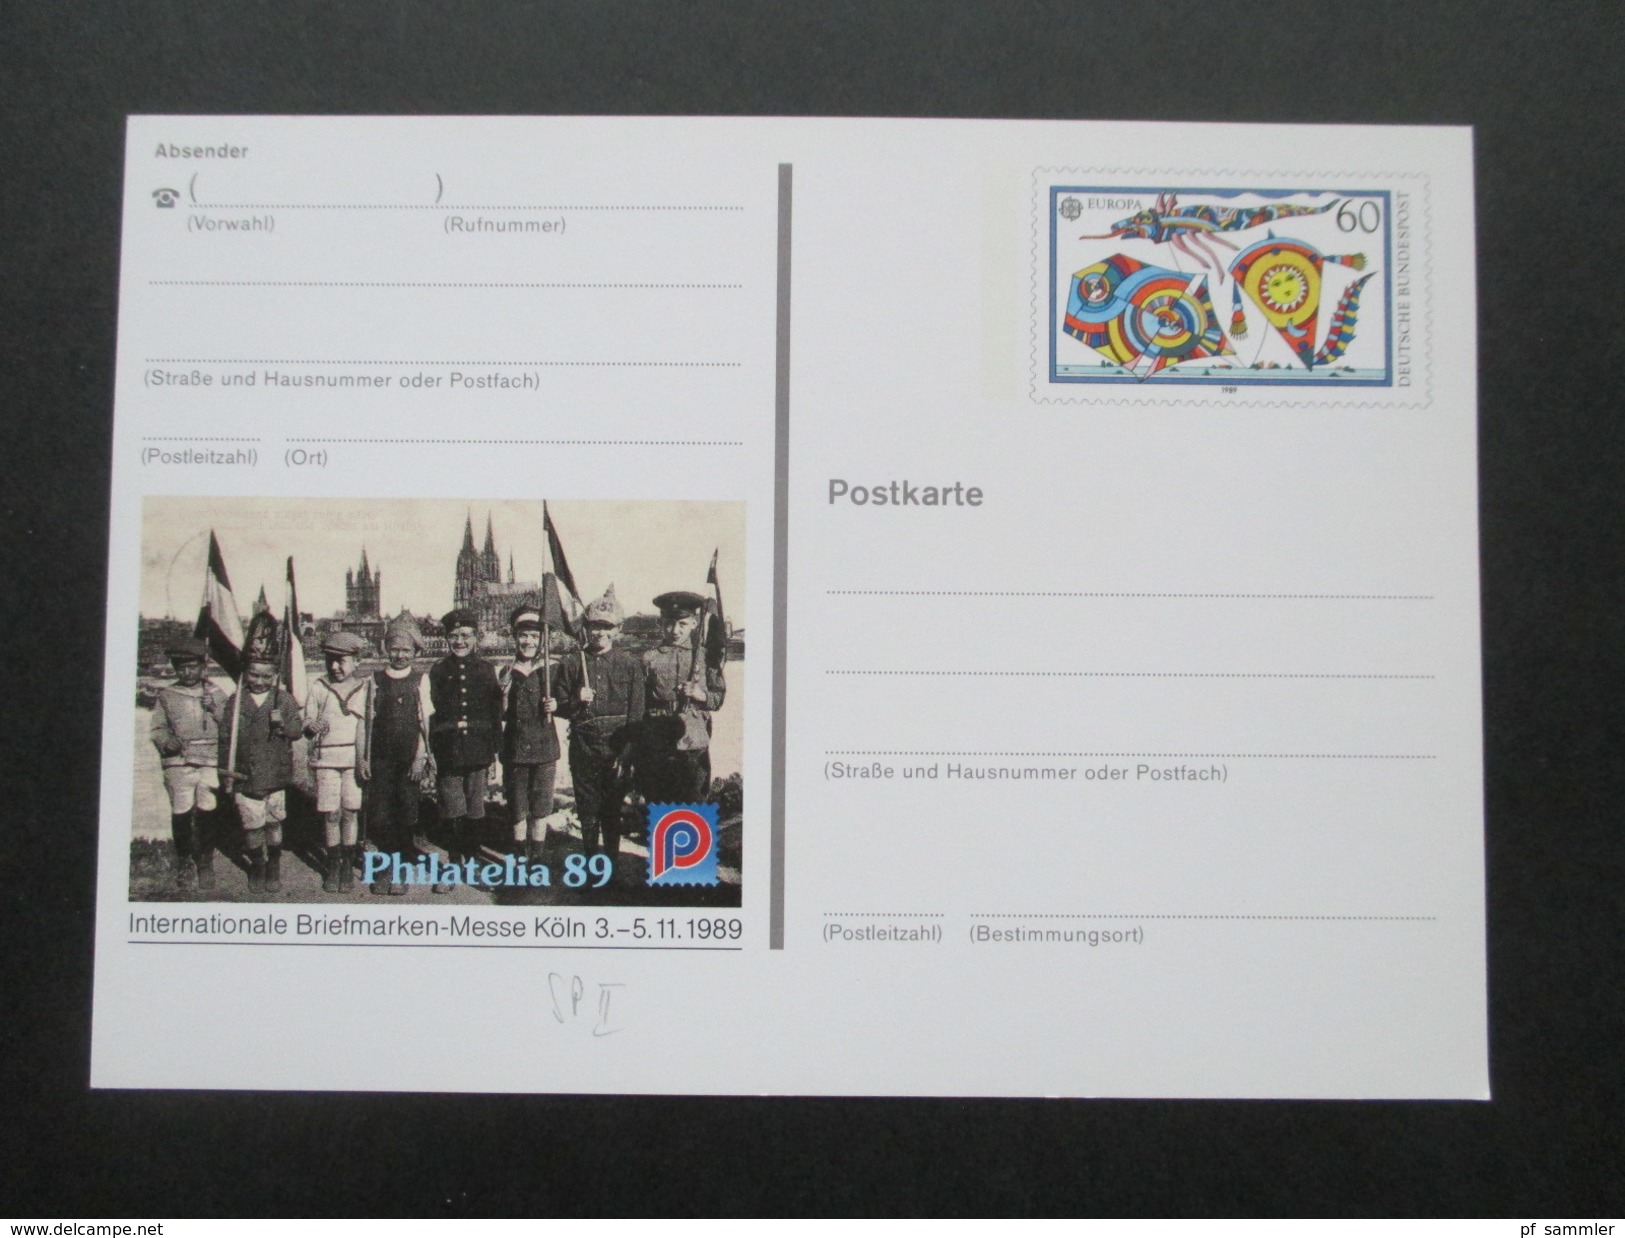 BRD Ganzsachen 1989 - 97 Sonderpostkarten! 45 Stück! Briefmarken Ausstellungen usw. ungebraucht / guter Zustand!